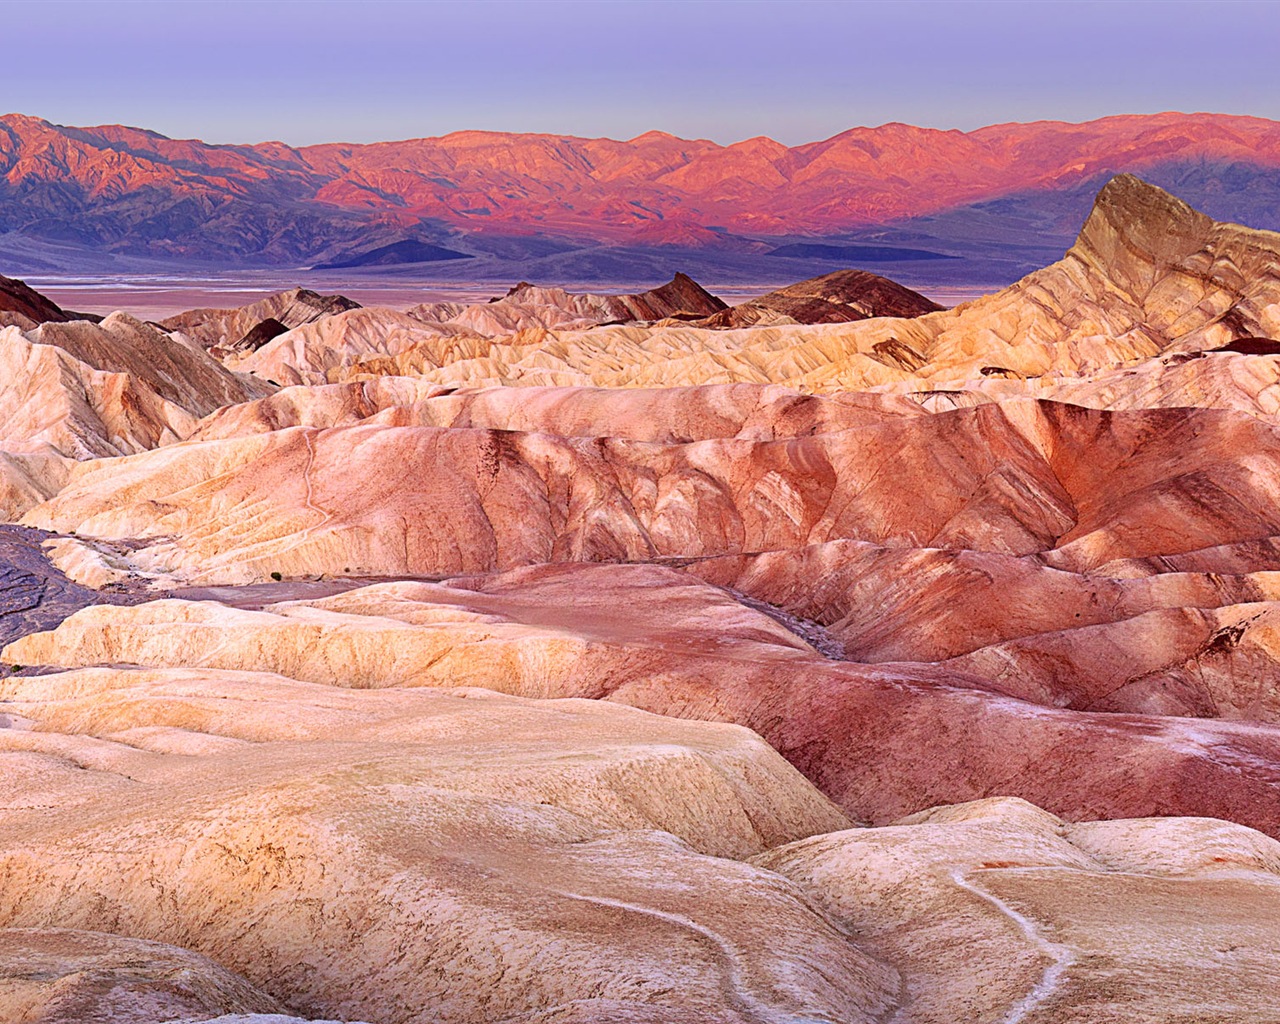 Les déserts chauds et arides, de Windows 8 fonds d'écran widescreen panoramique #10 - 1280x1024